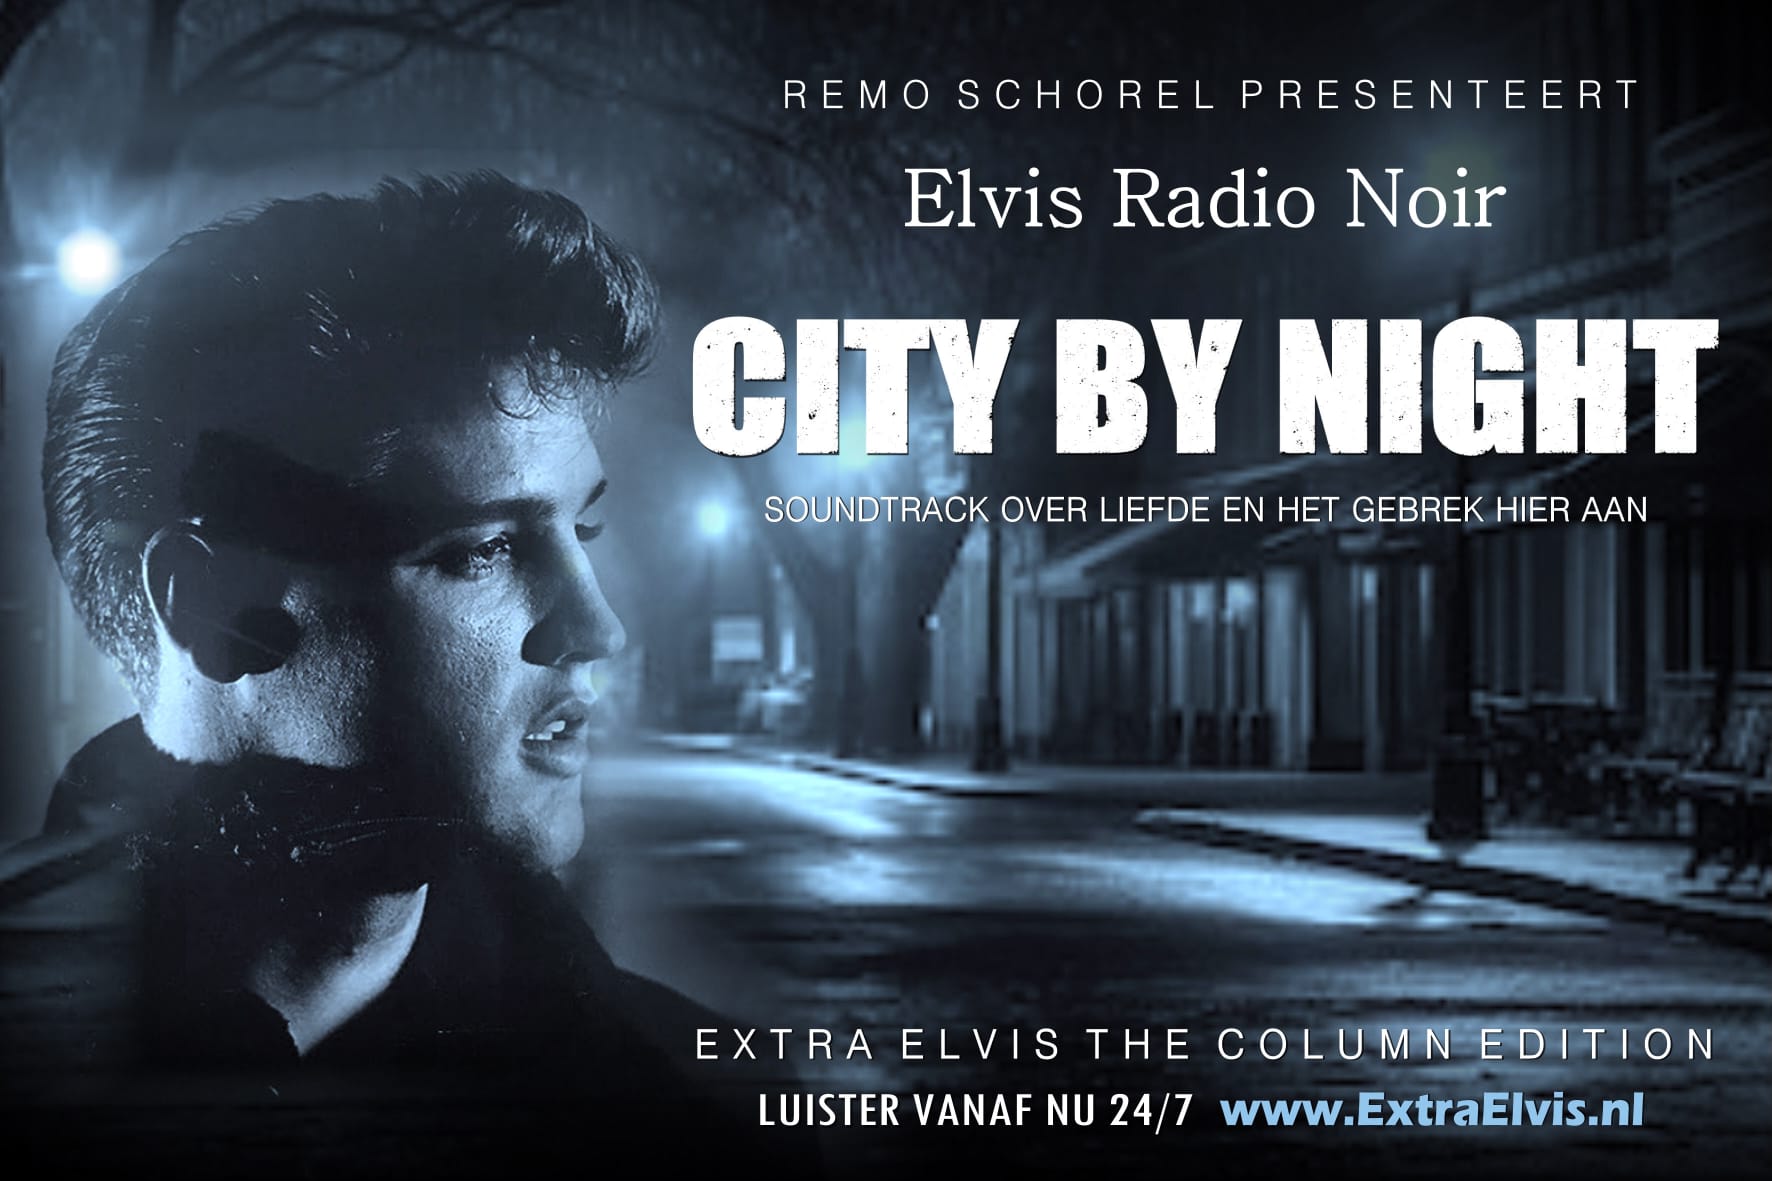 Flyer met de tekst Elvis radio noir, City by night